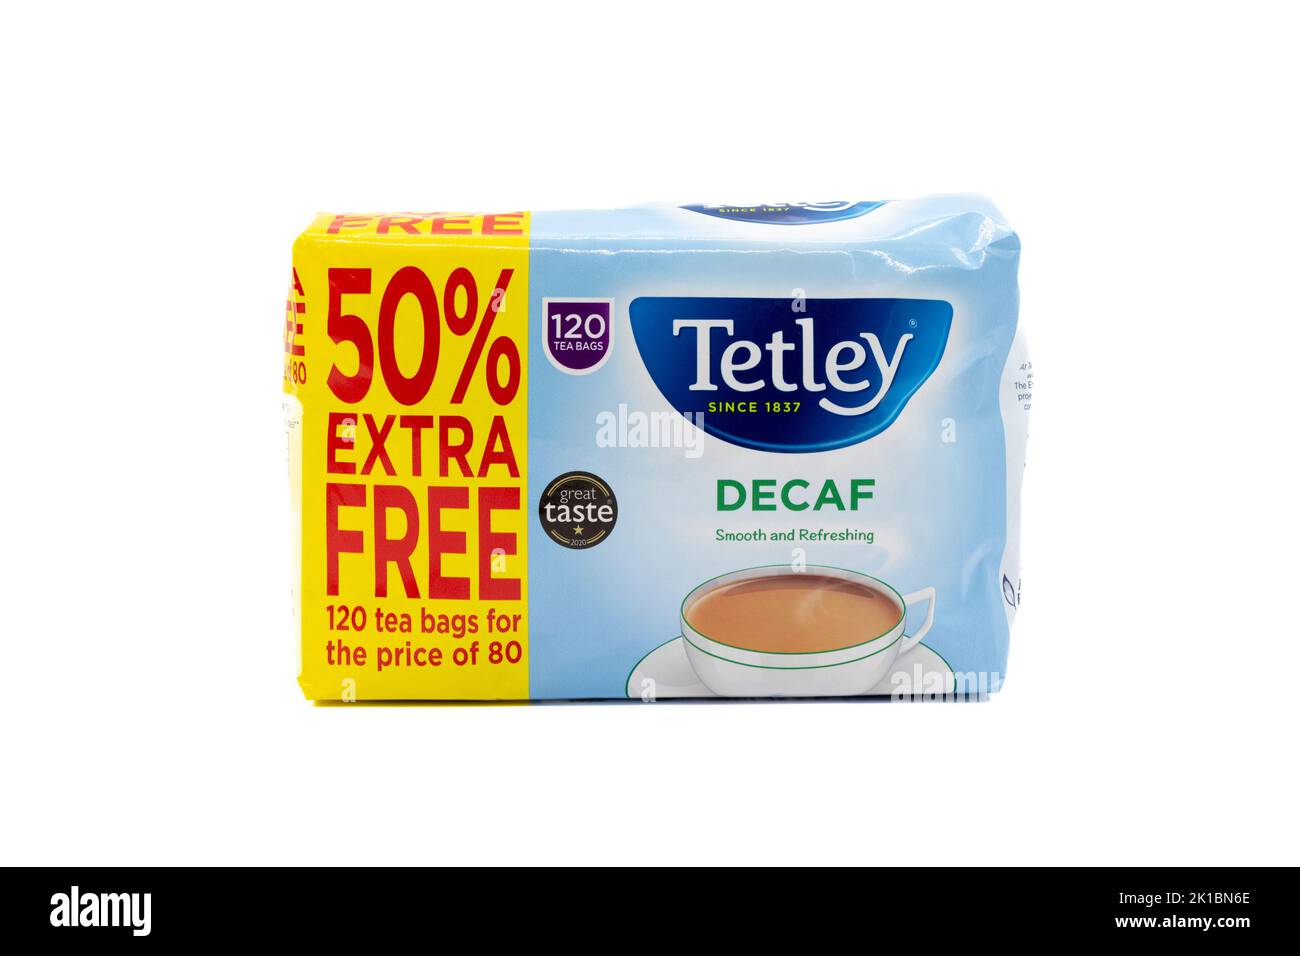 Irvine, Escocia, Reino Unido - 20 de agosto de 2022: Bolsas de té descafeinado de la marca Tetley en un embalaje de papel reciclable. Foto de stock